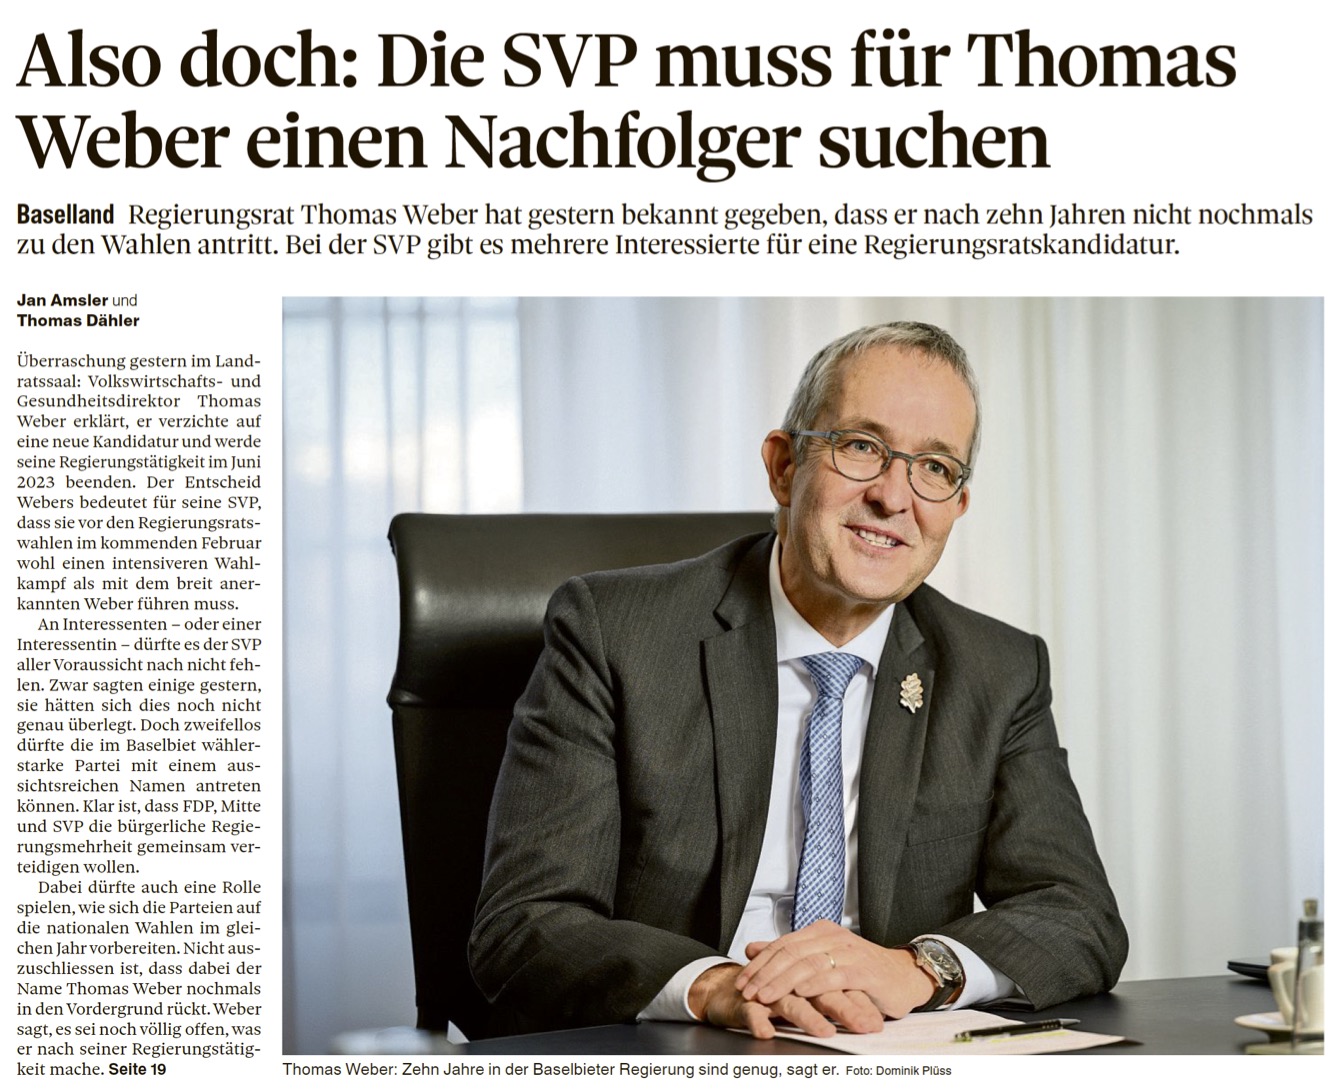 Thomas Weber, Medienbeiträge vom 1. Juli 2022